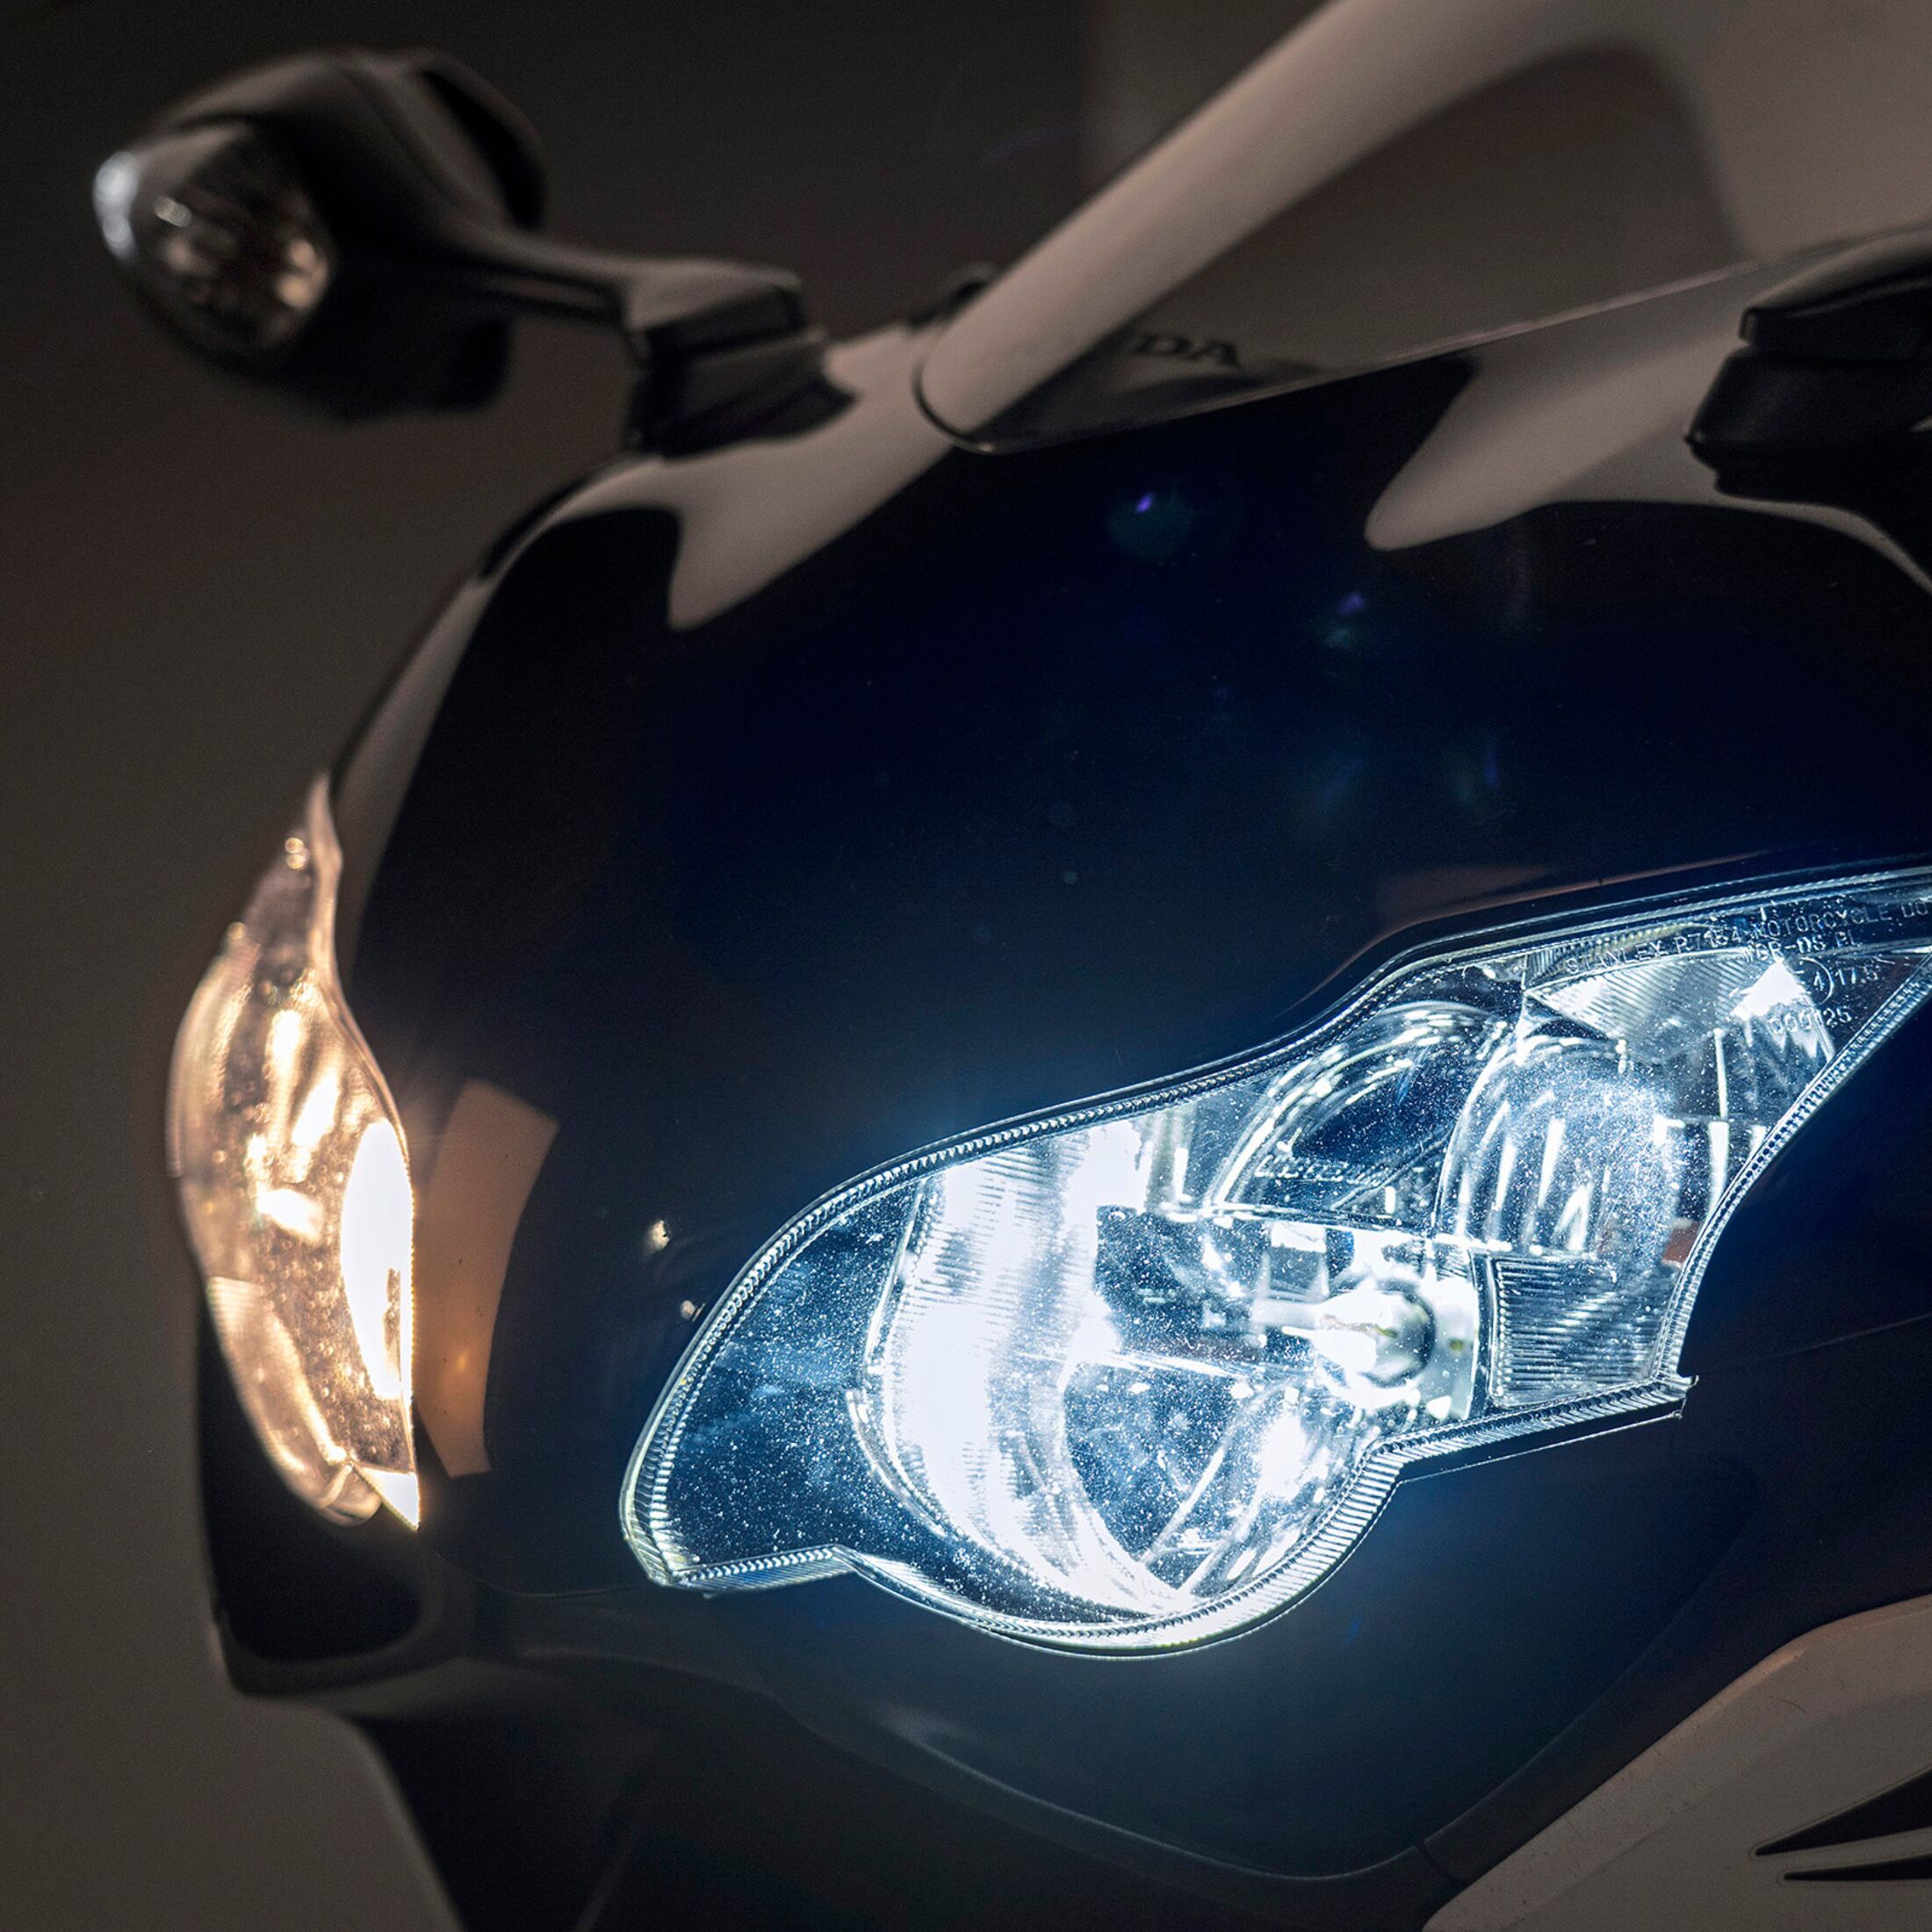 LED, H4, H7 – Licht am Motorrad nachrüsten: Was ist legal